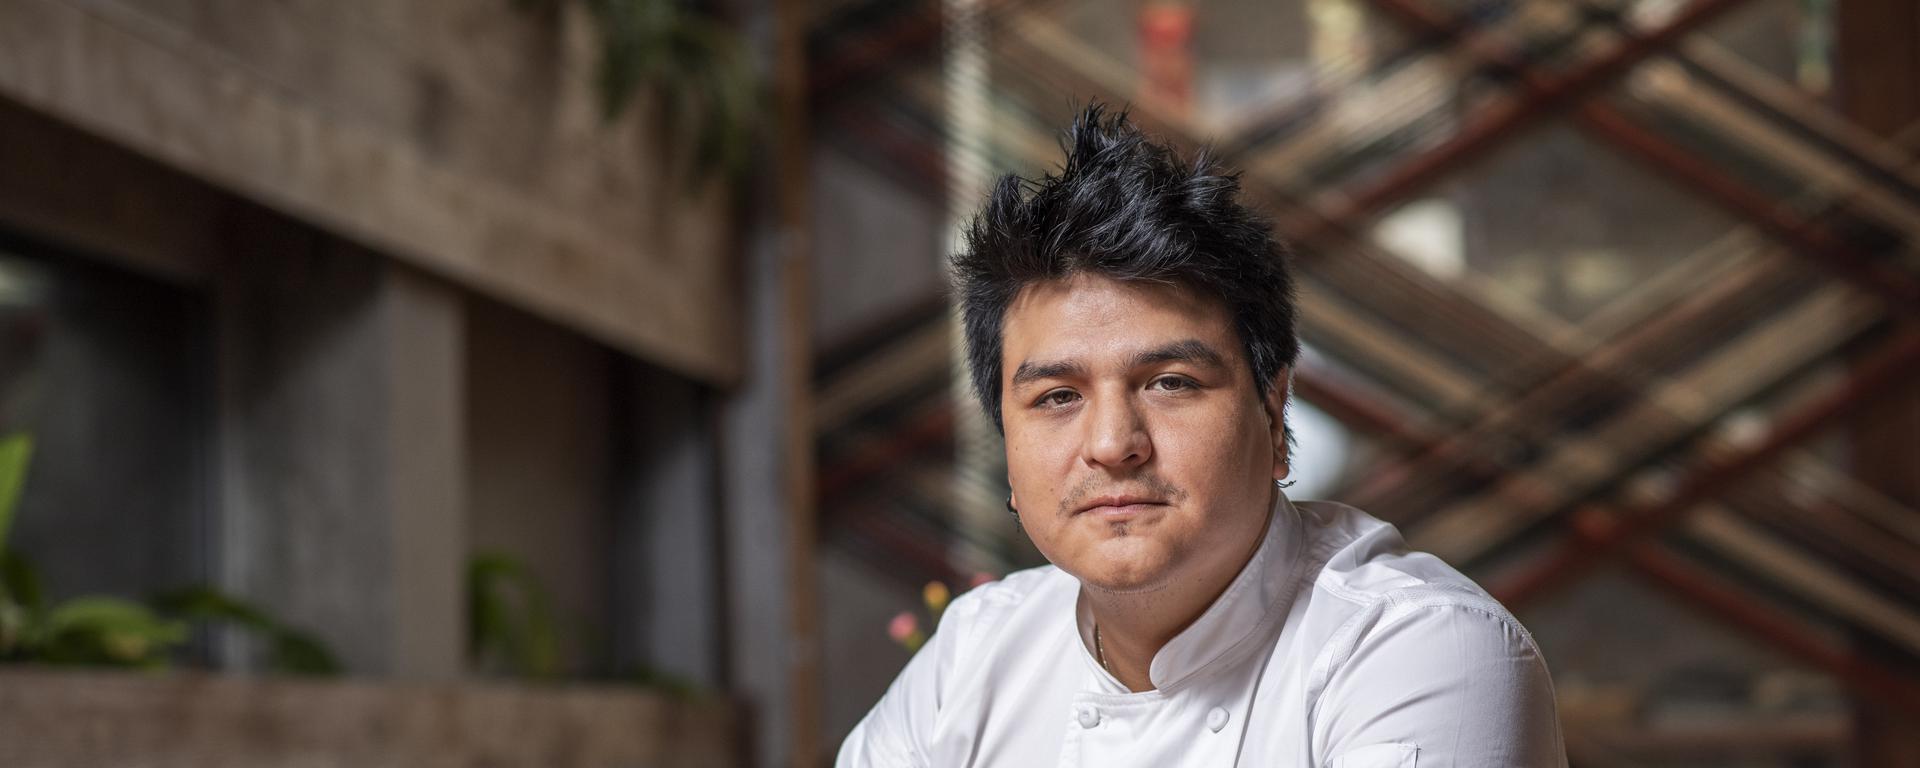 Ralf Zúñiga: ¿quién es el cocinero peruano que ofrece un menú para comer con los ojos vendados?